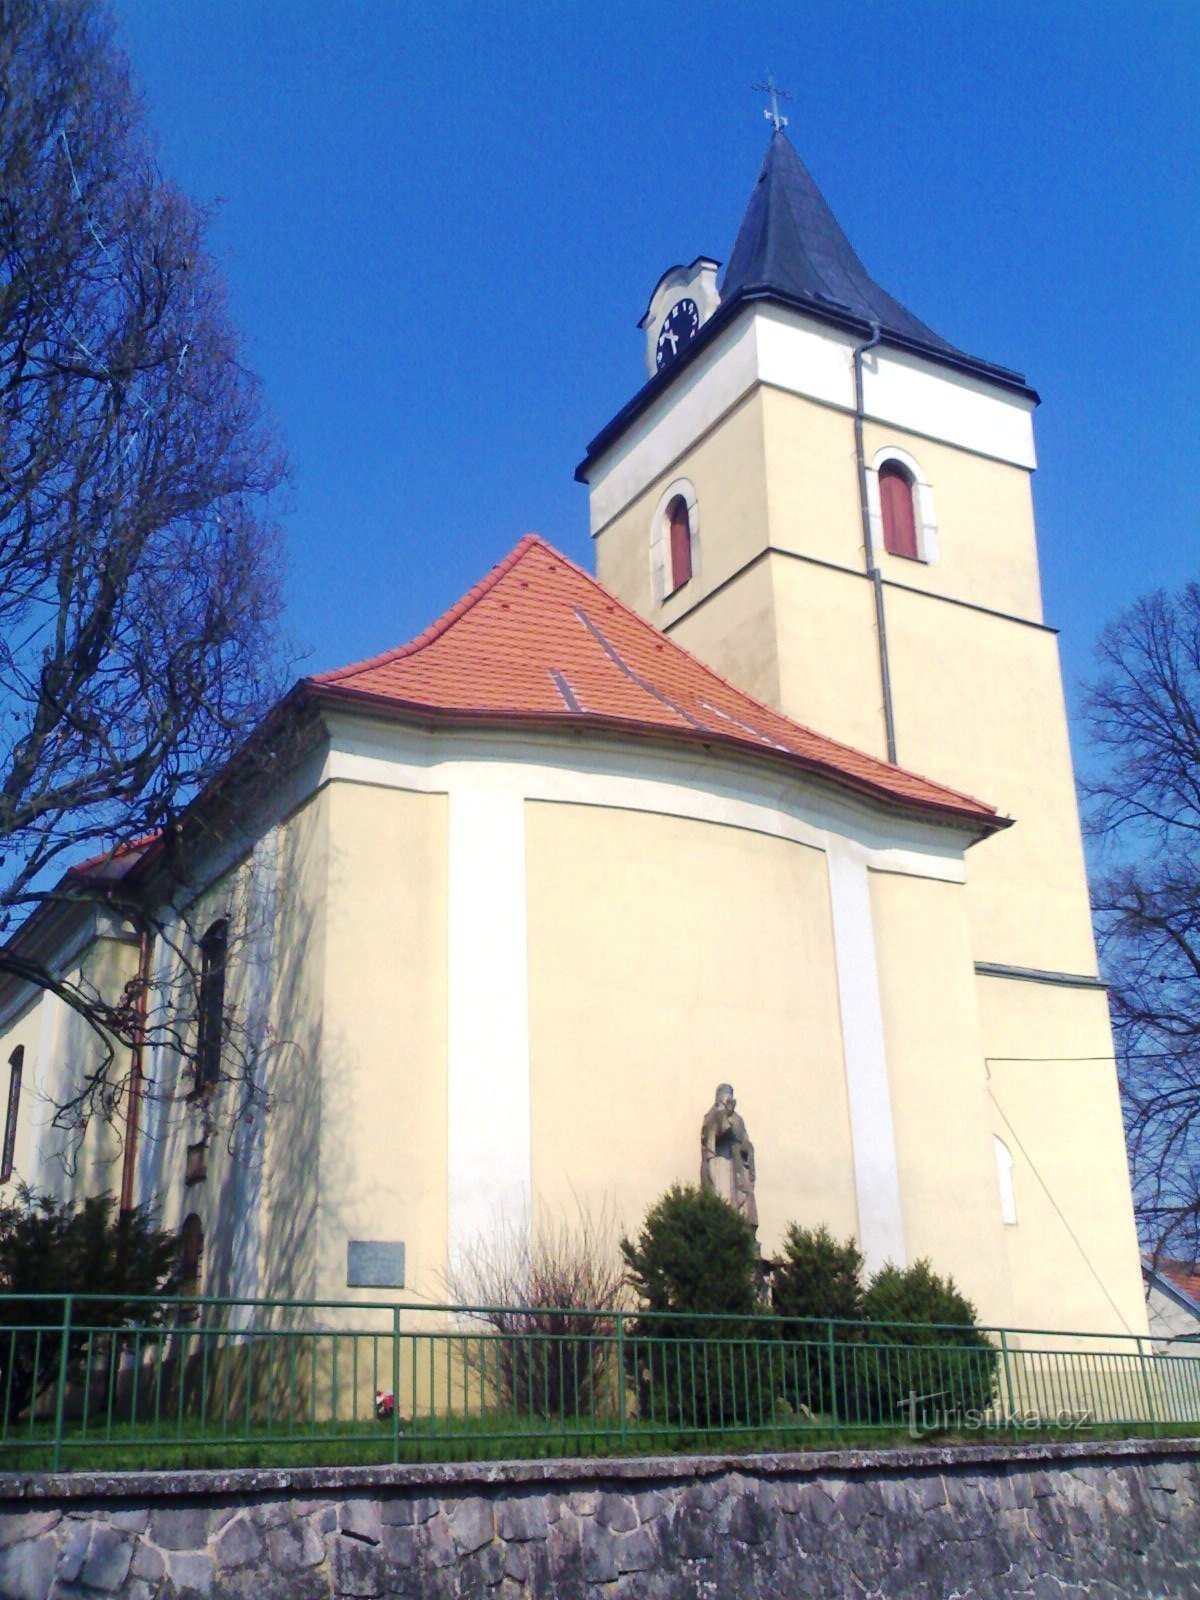 Lochenice – Kościół Narodzenia Najświętszej Marii Panny